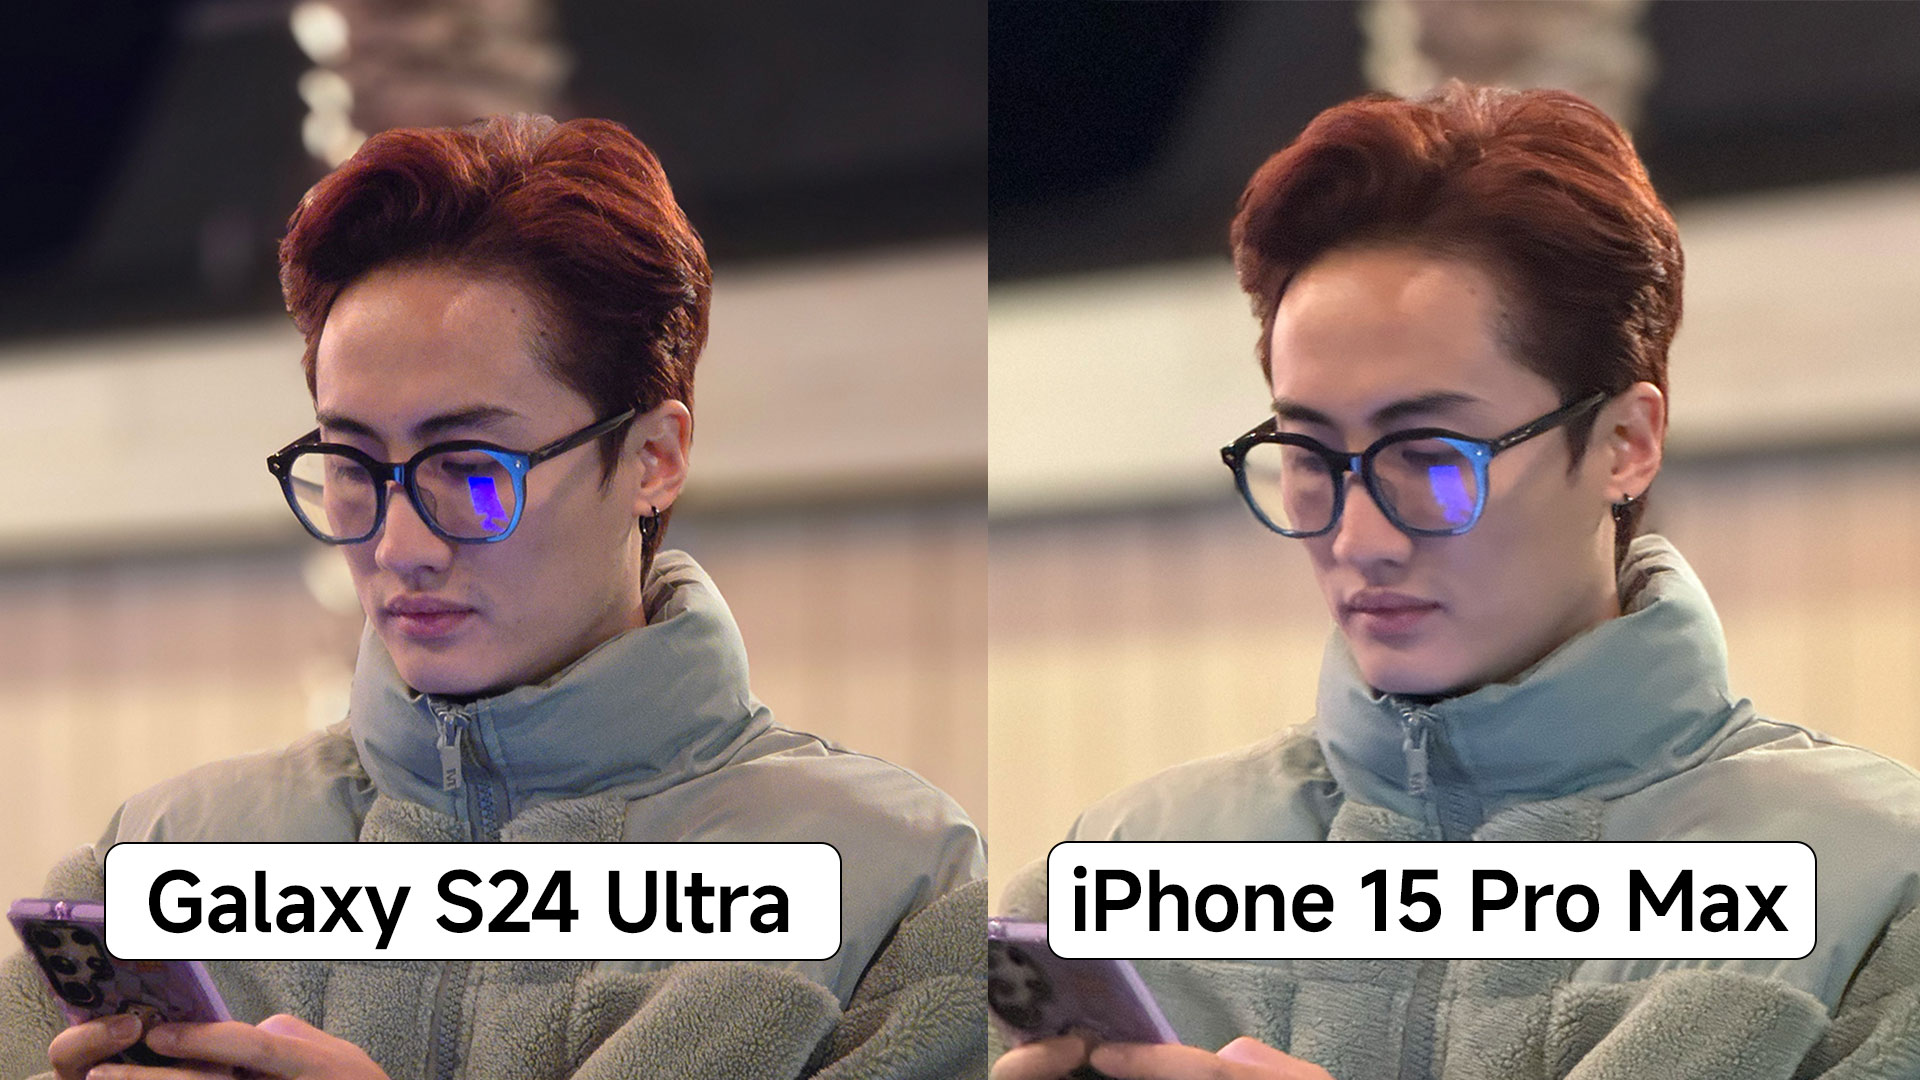 Bình chọn ảnh chụp từ camera Galaxy S24 Ultra và iPhone 15 Pro Max